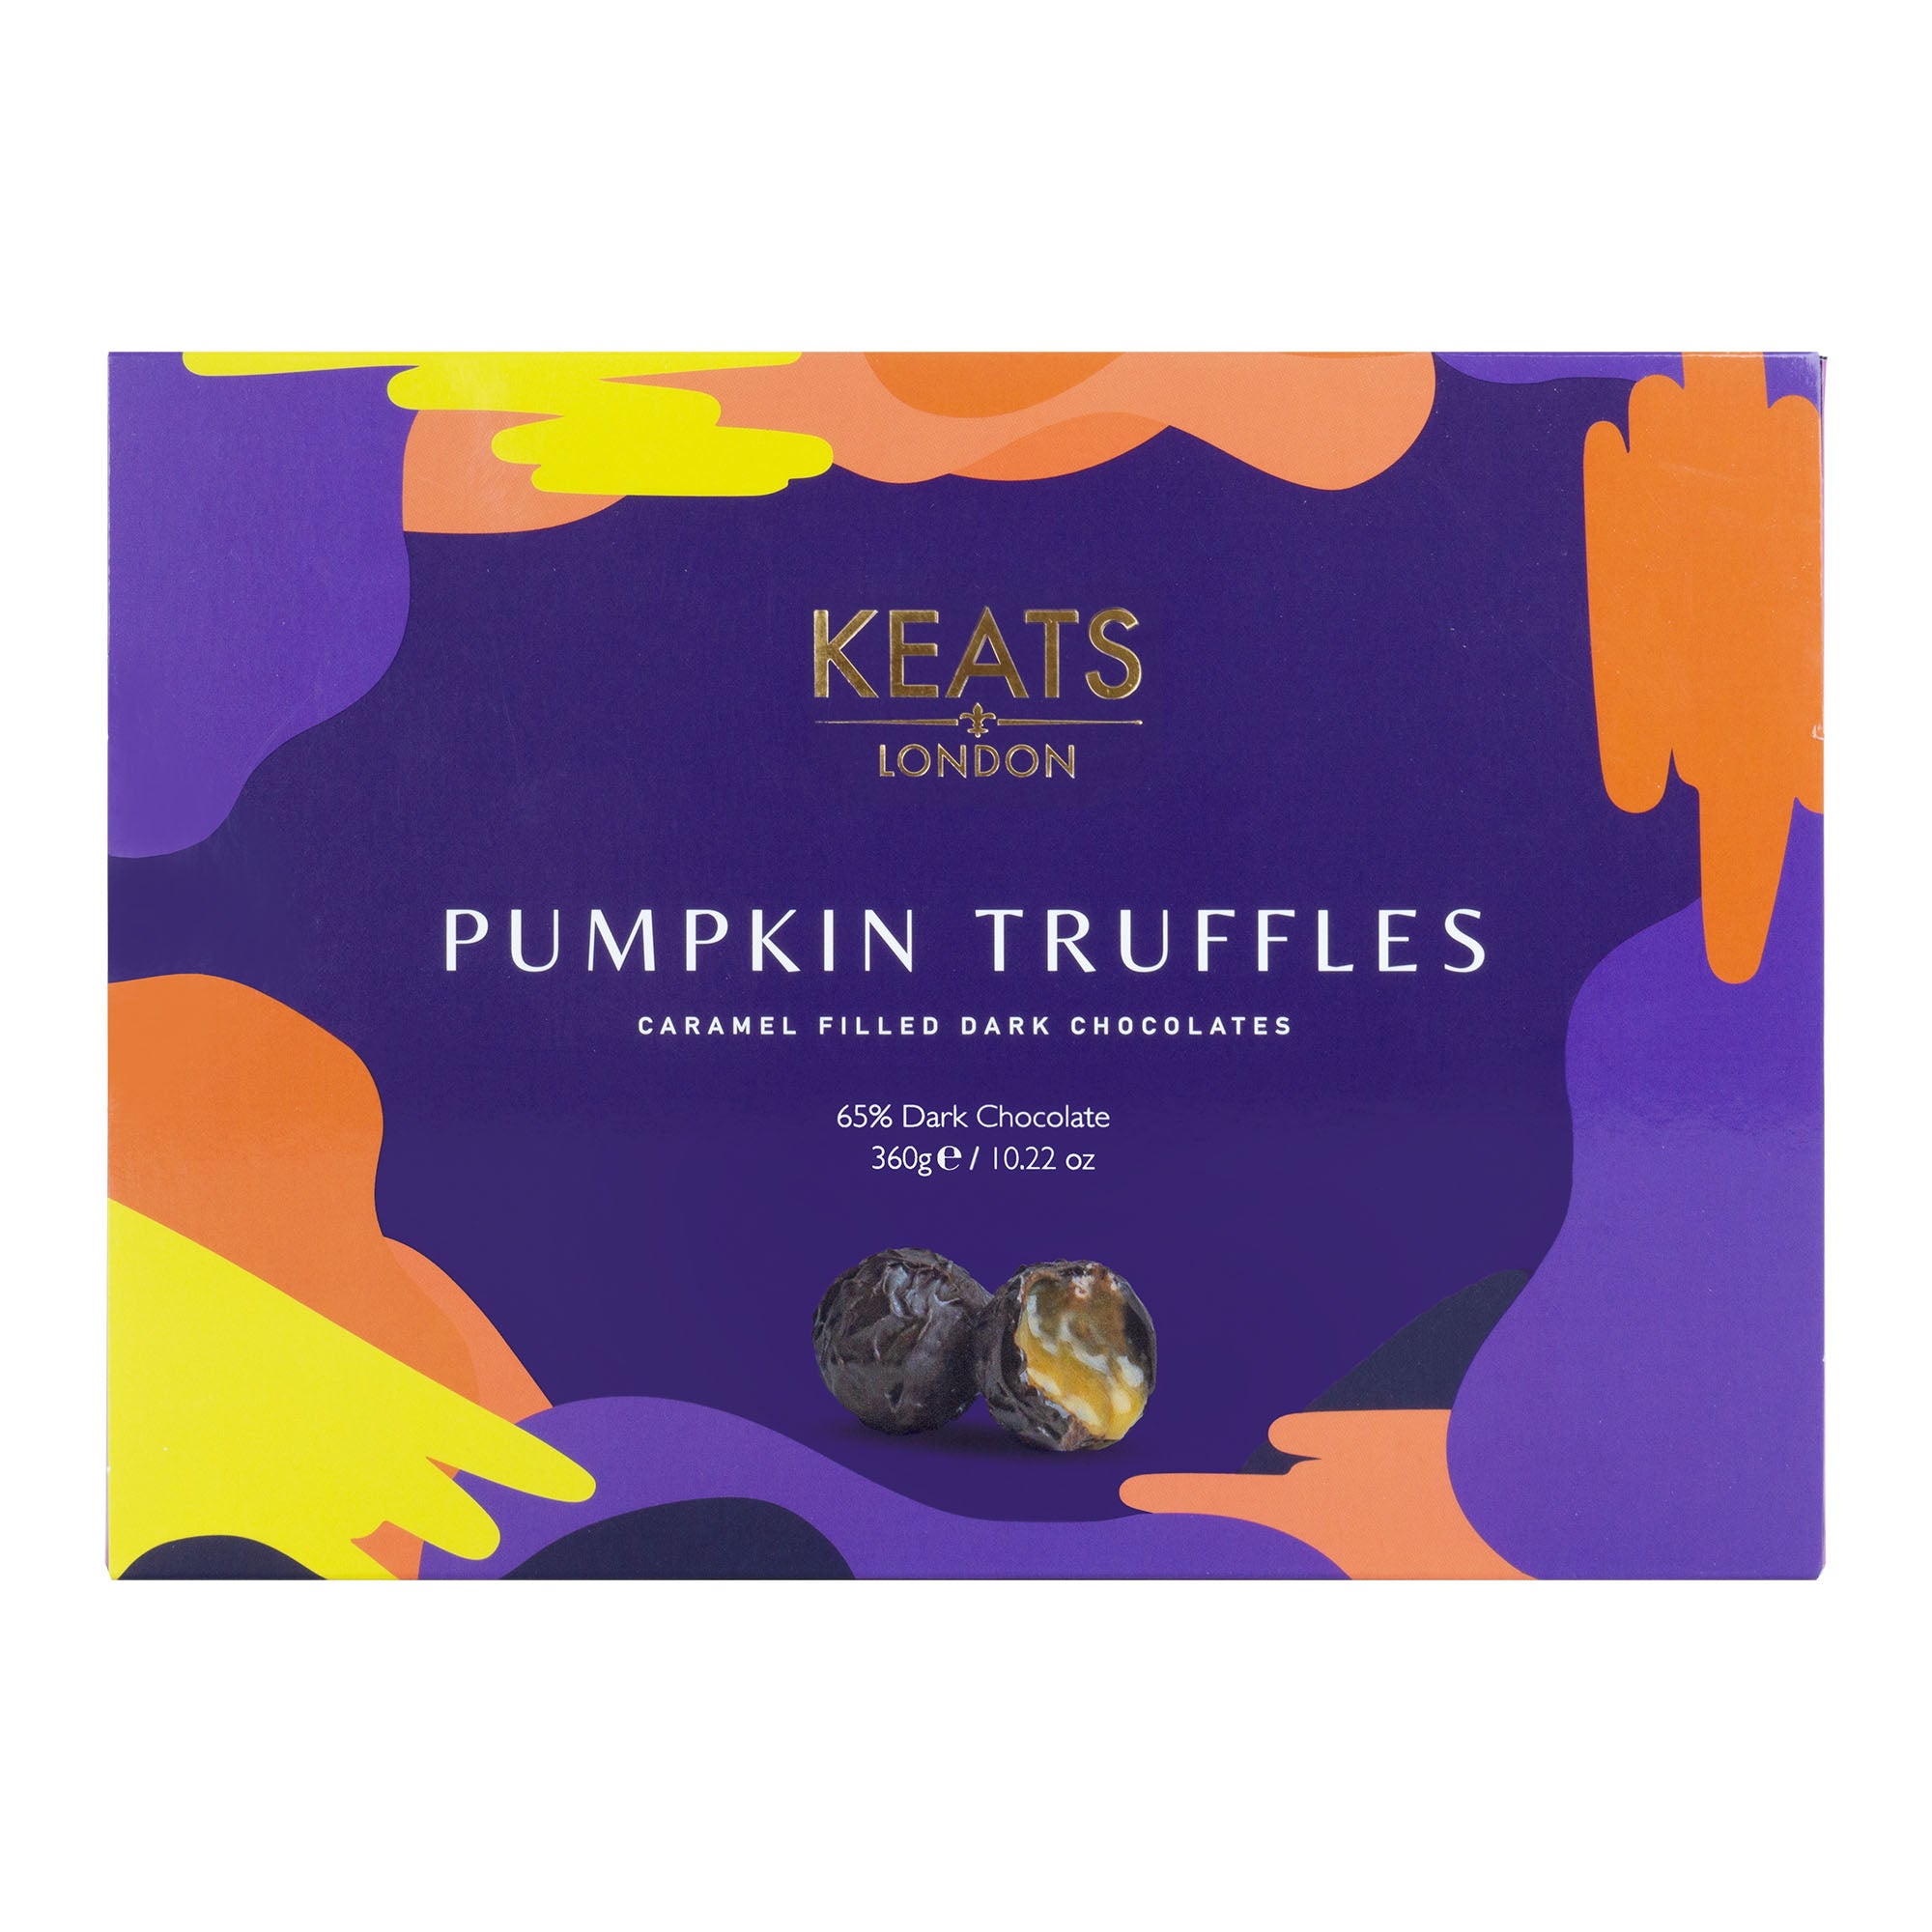 Keats Pumpkin Truffles (360g) by Keats - The Pop Up Deli